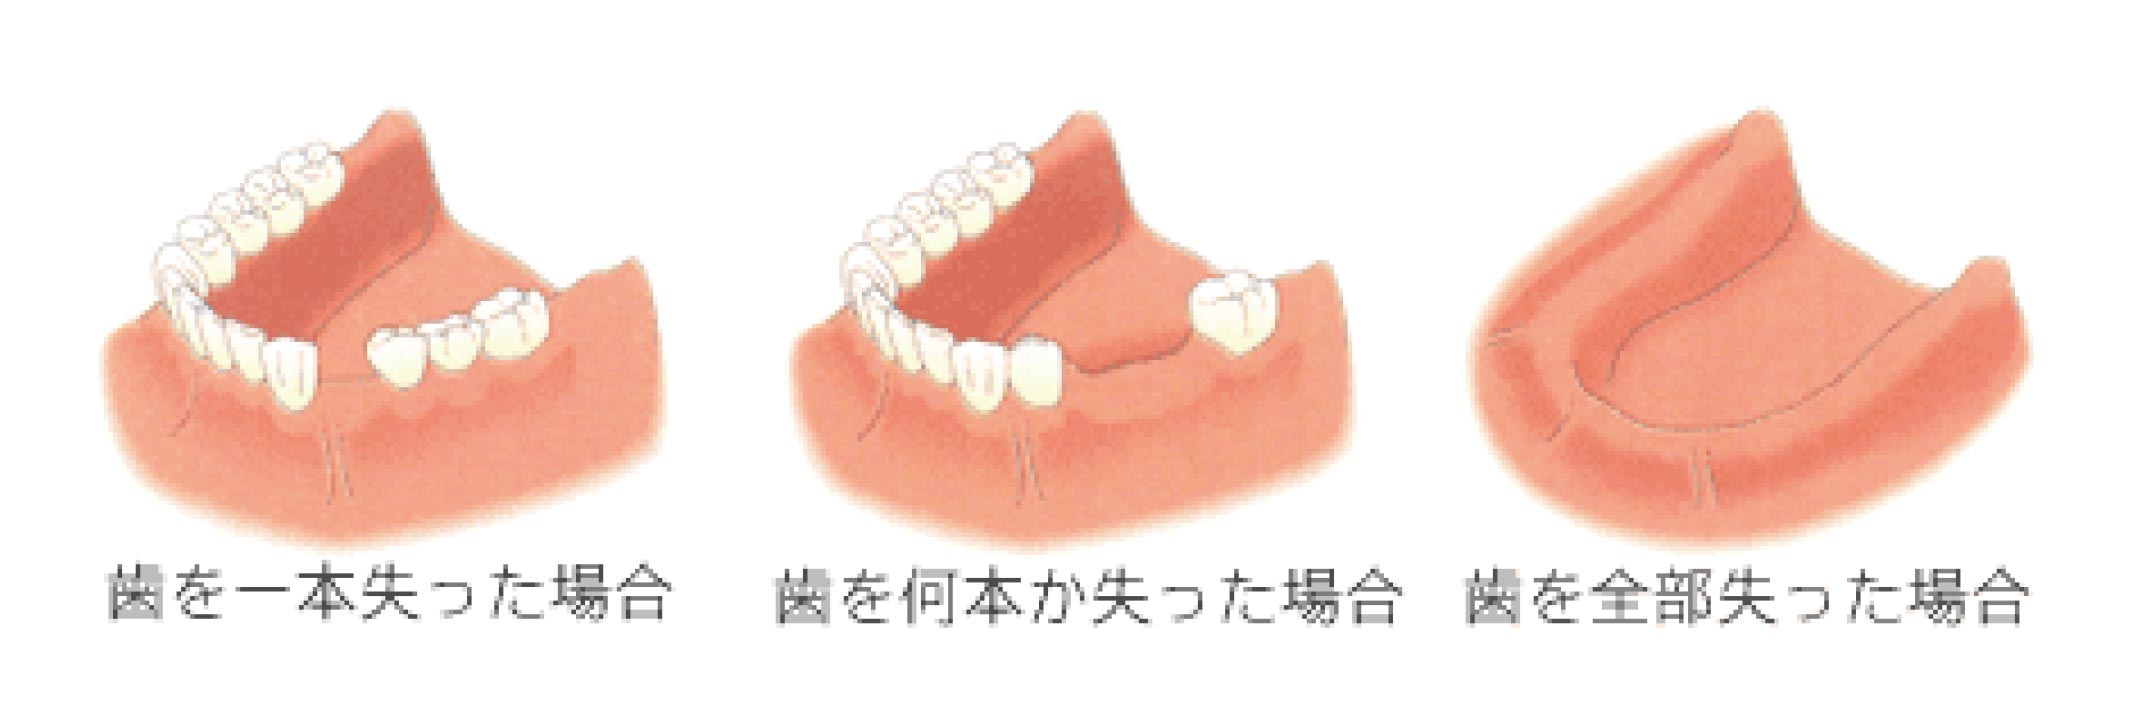 失われた歯のイメージ